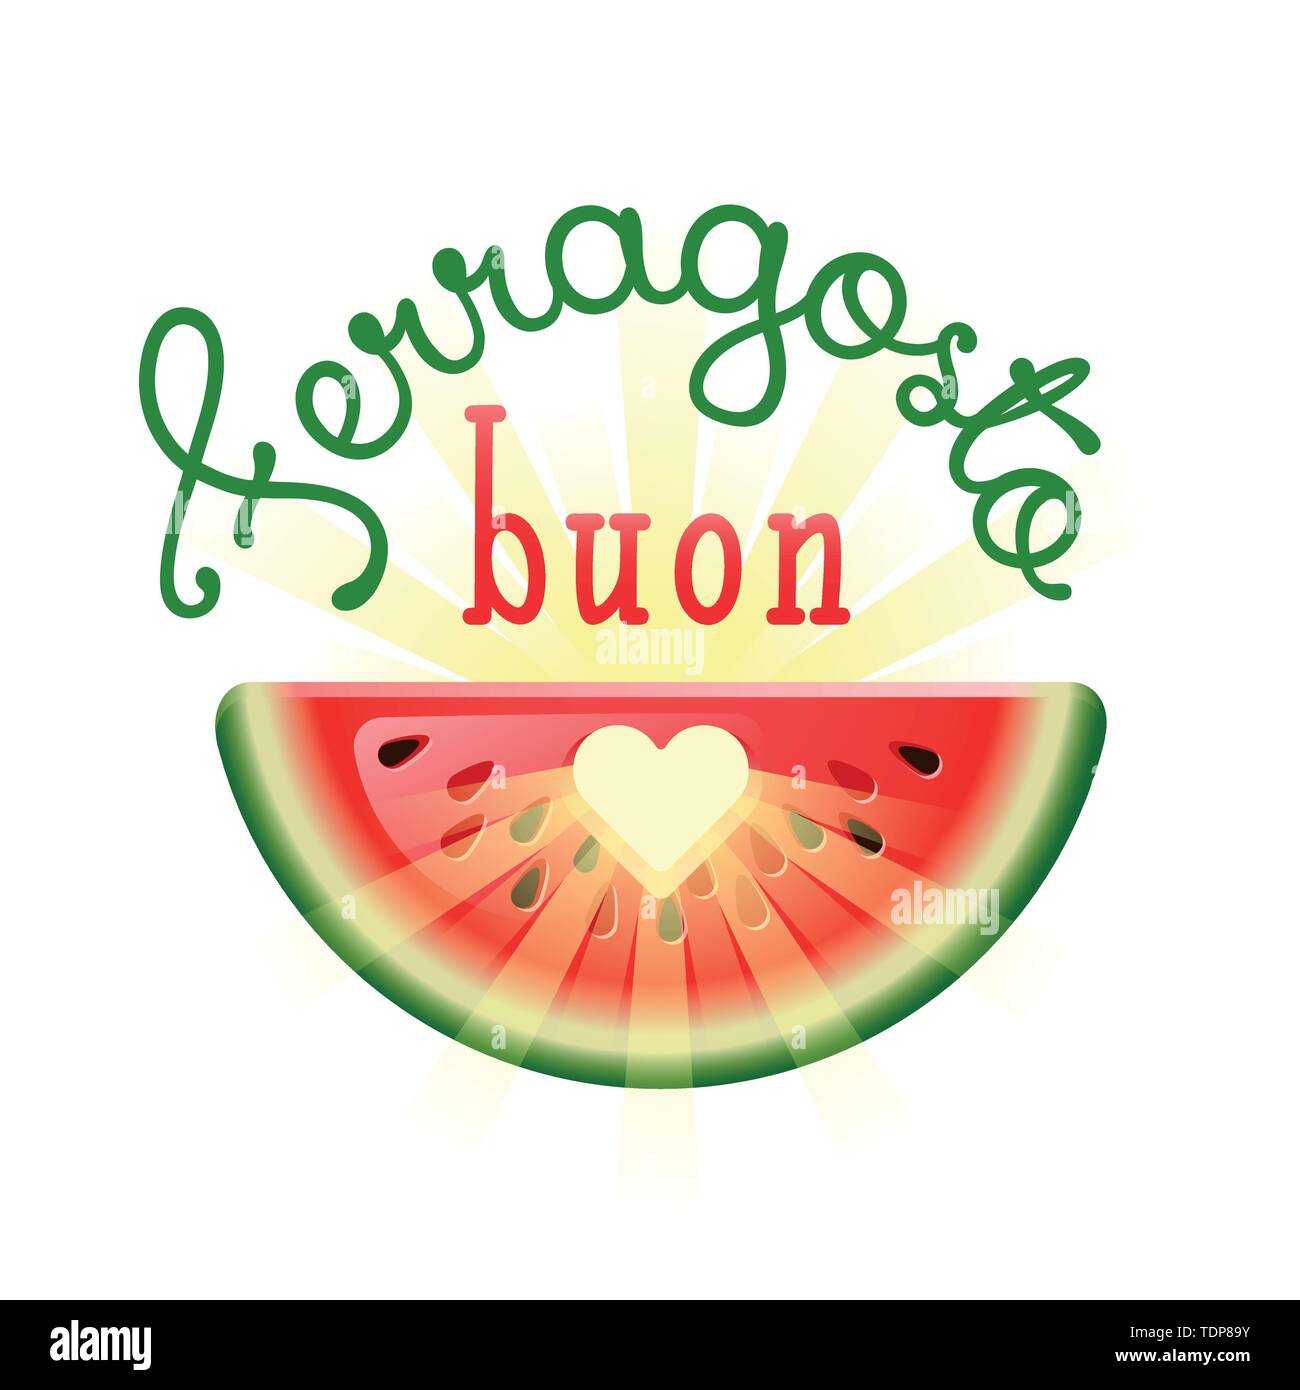 Buon Ferragosto. Happy Sommer Urlaub in Italienisch. Italienischer Sommer Festival Konzept mit Herz in Wassermelone und Sonnenstrahlen. Vector Illustration. Stock Vektor